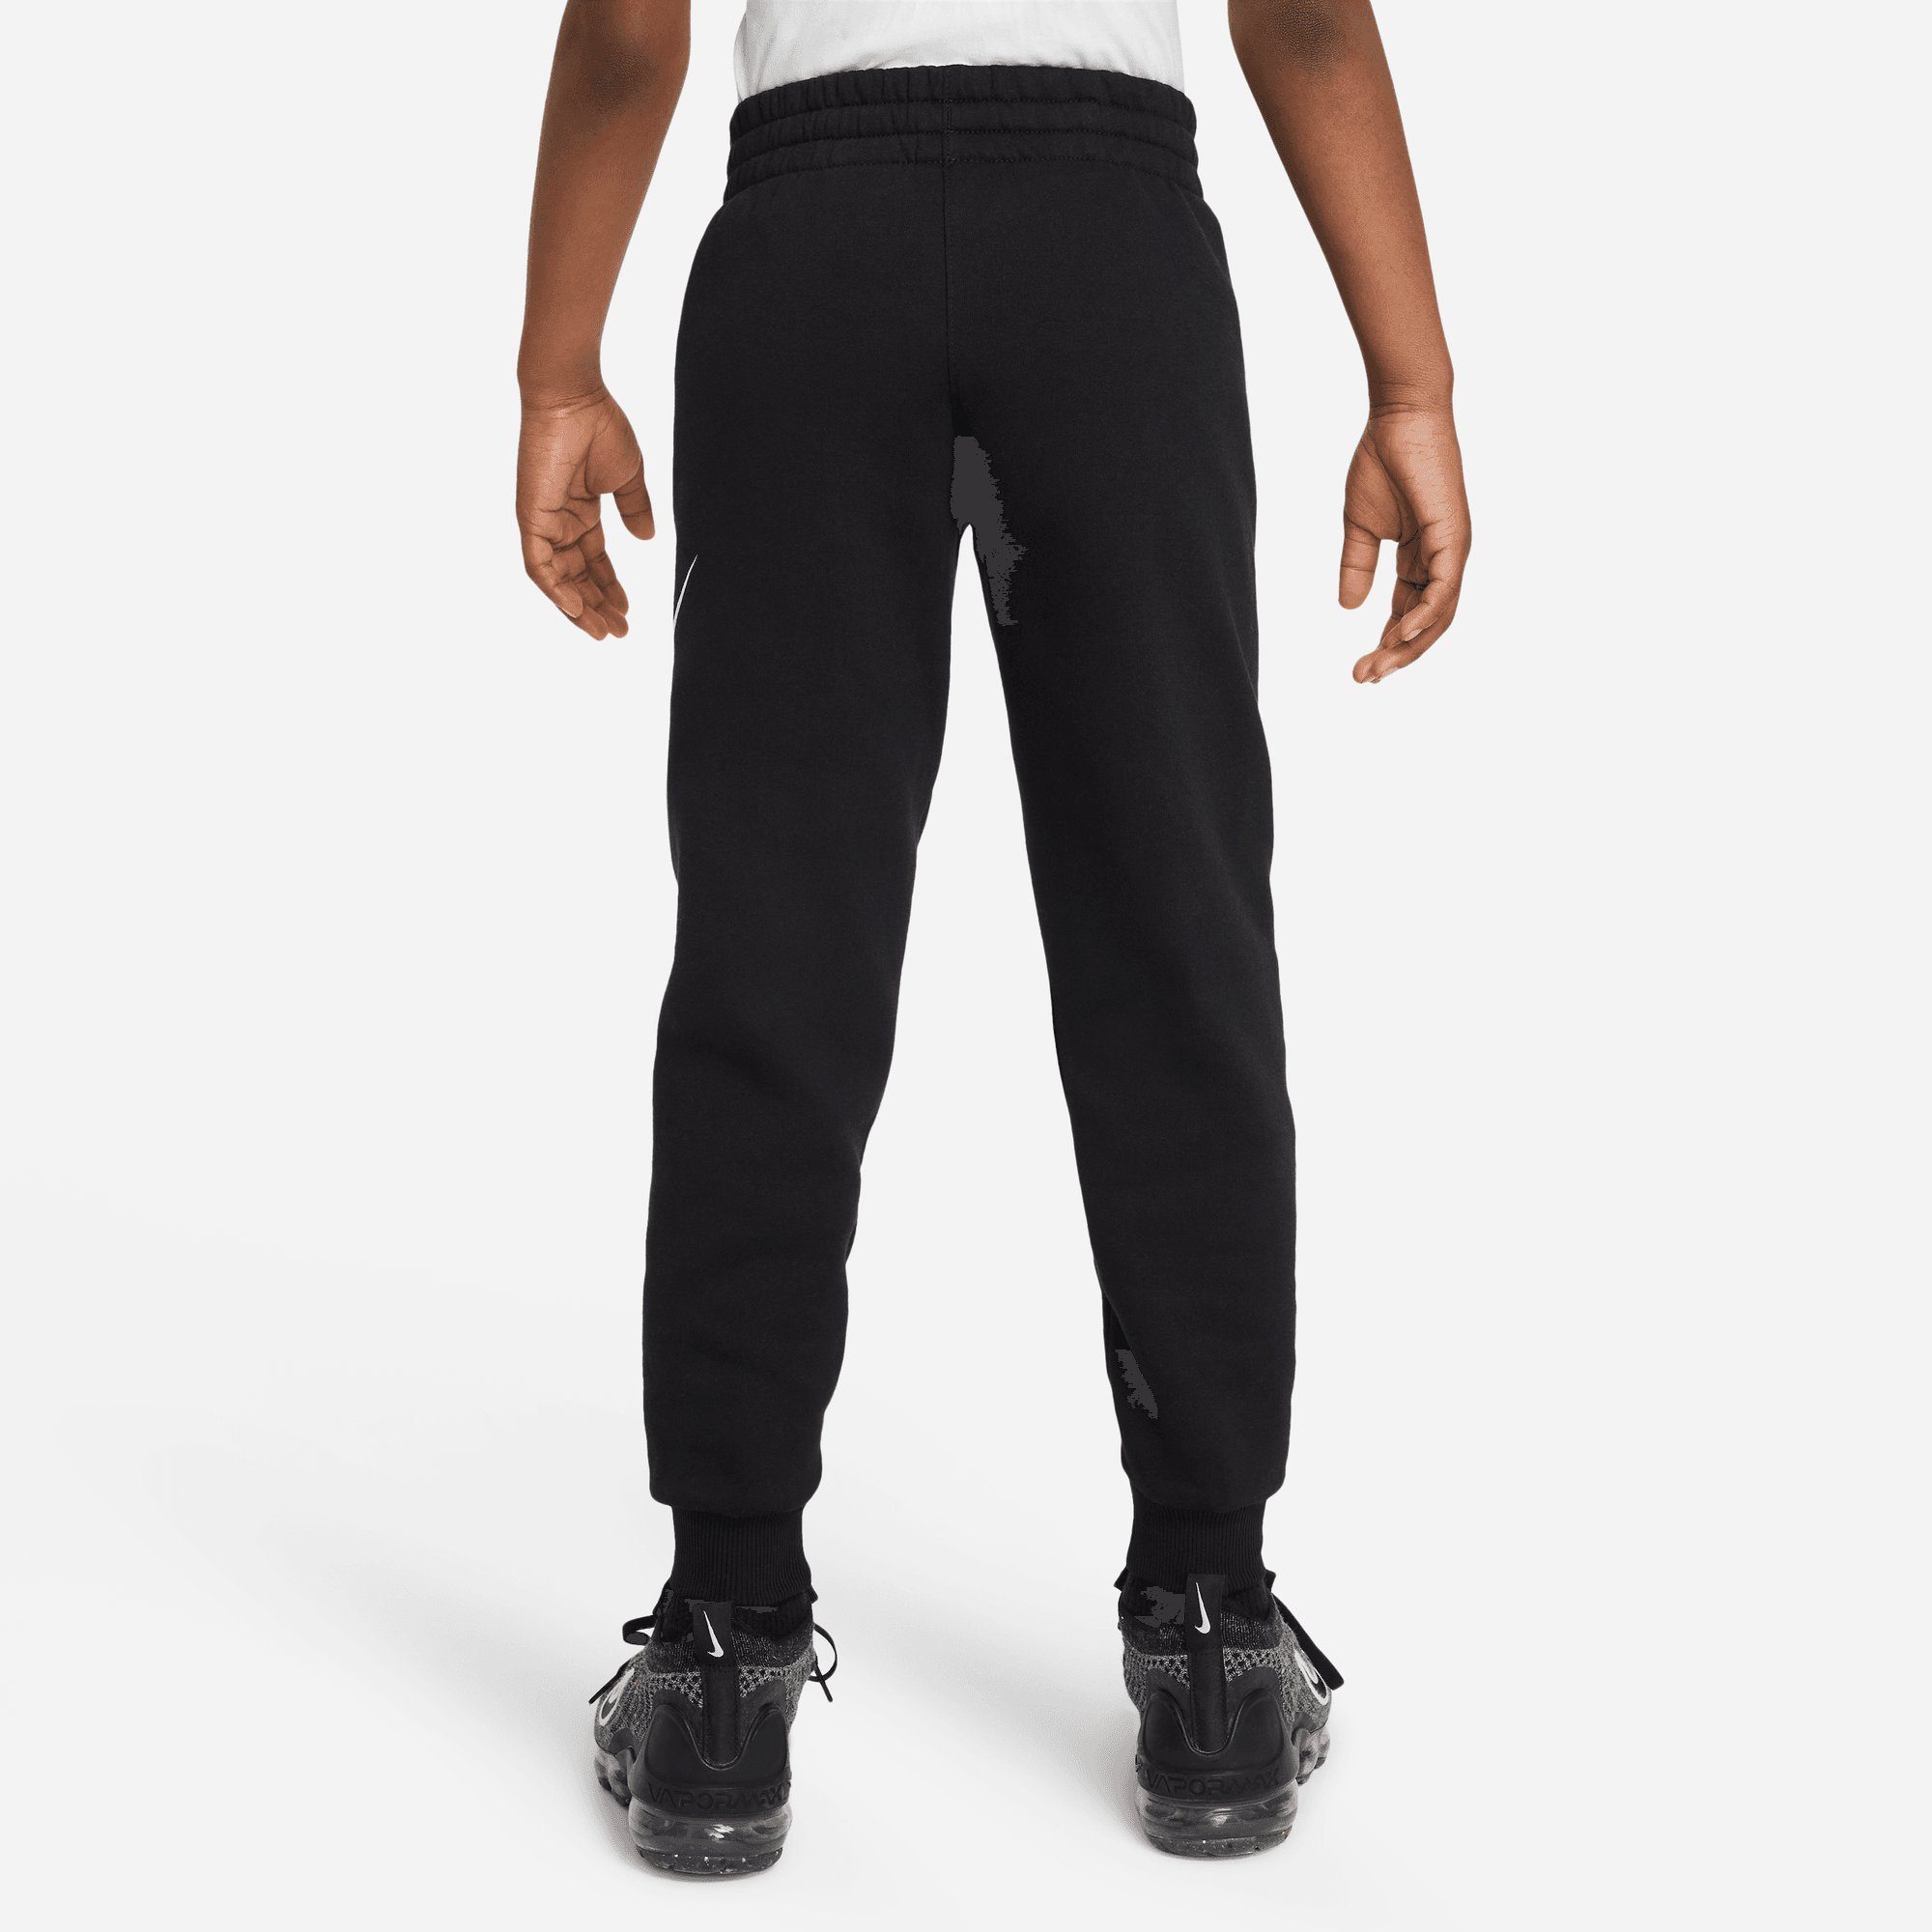 FLEECE Sportswear KIDS' BIG Jogginghose BLACK/WHITE JOGGER PANTS CLUB Nike